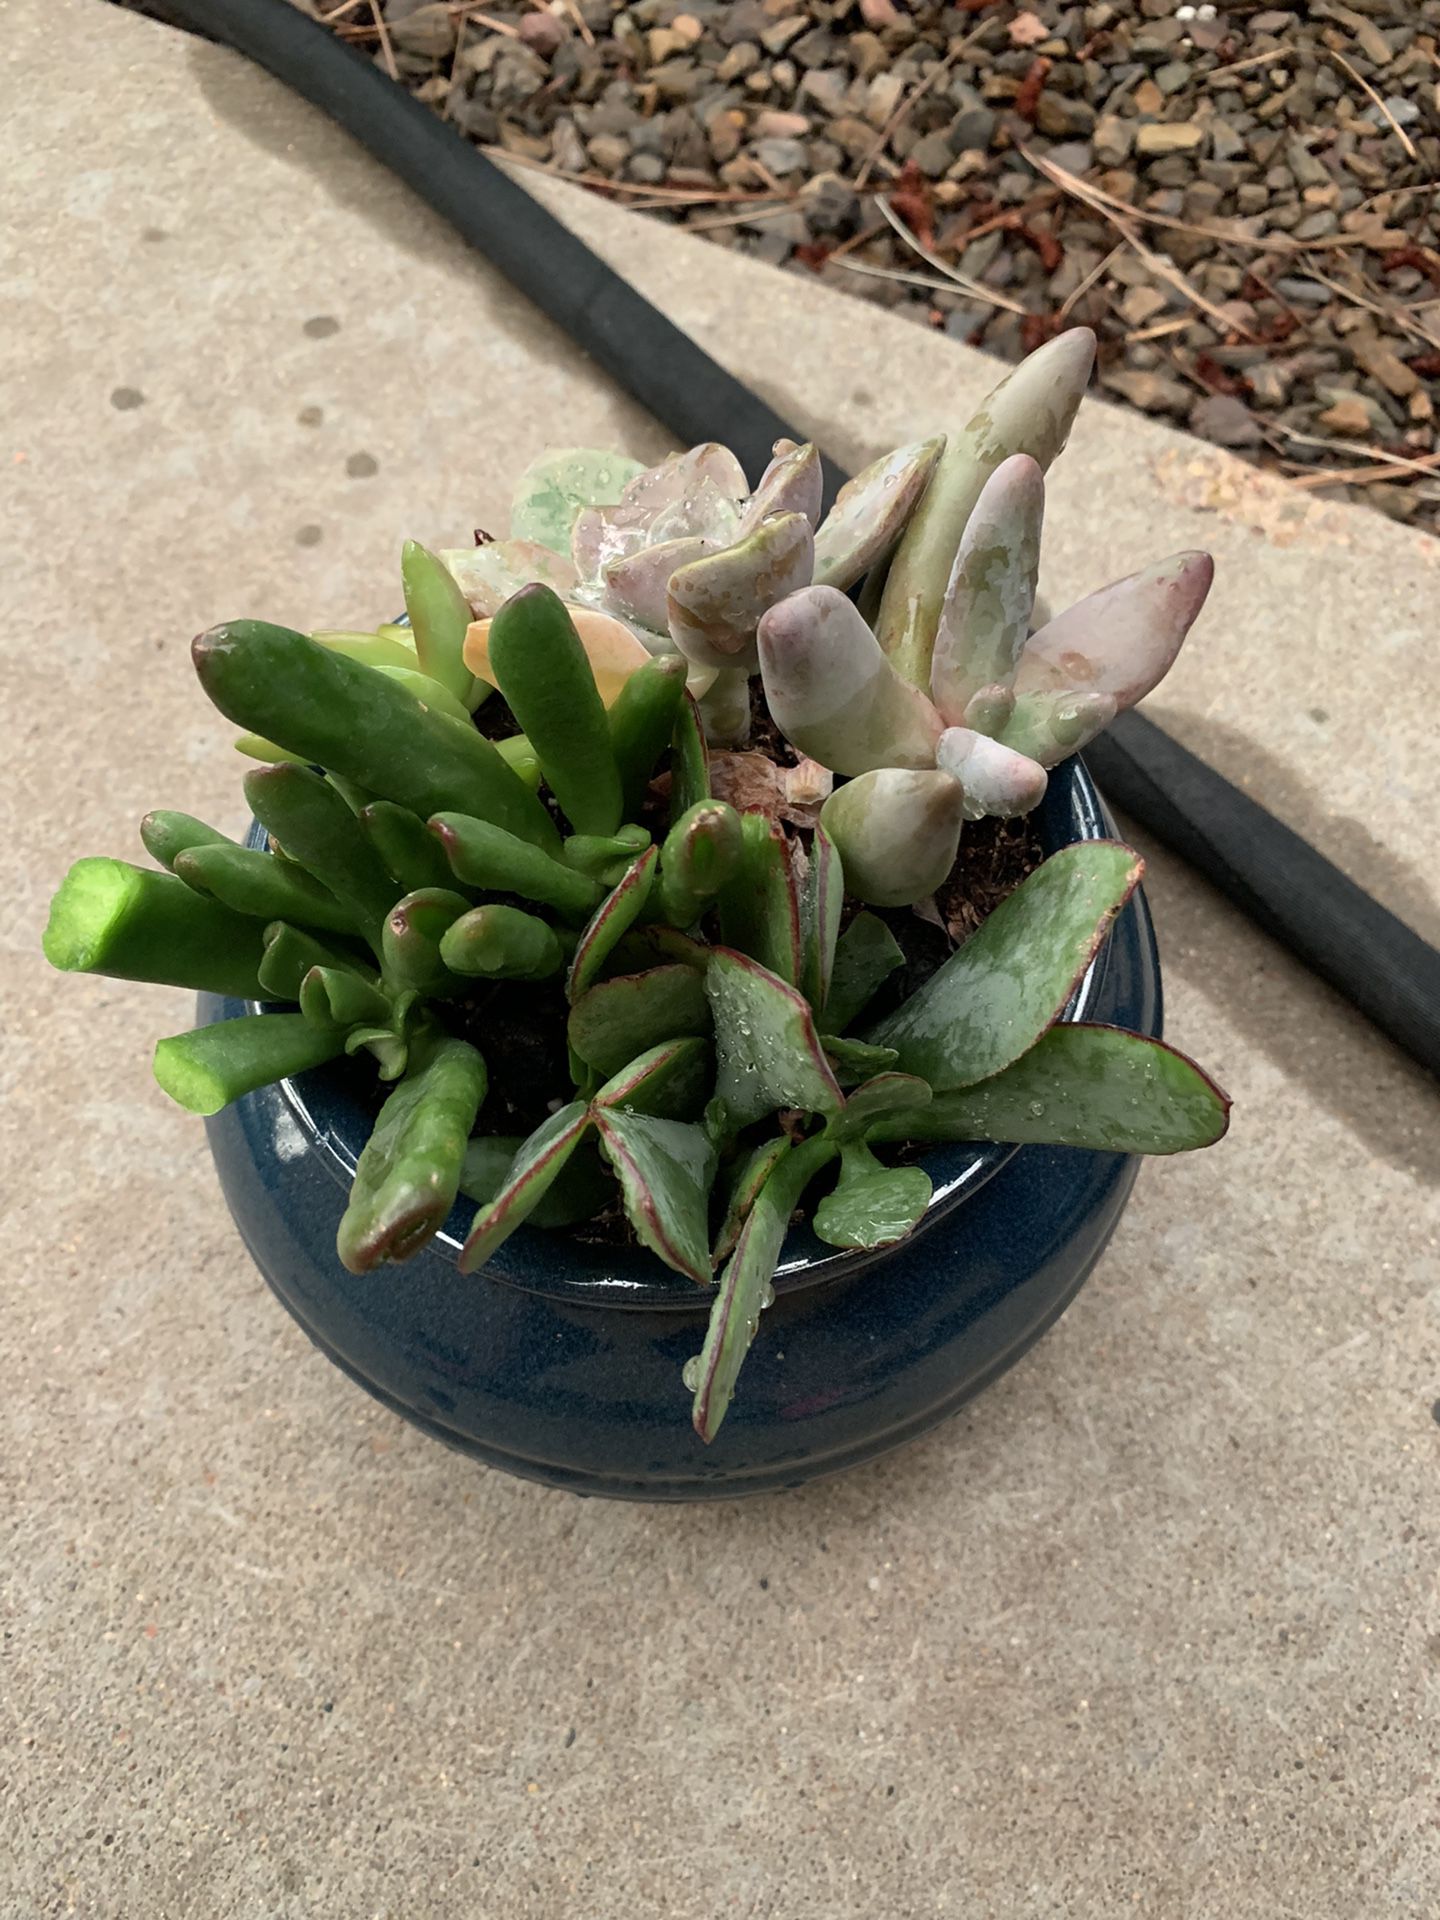 Succulent Bowl